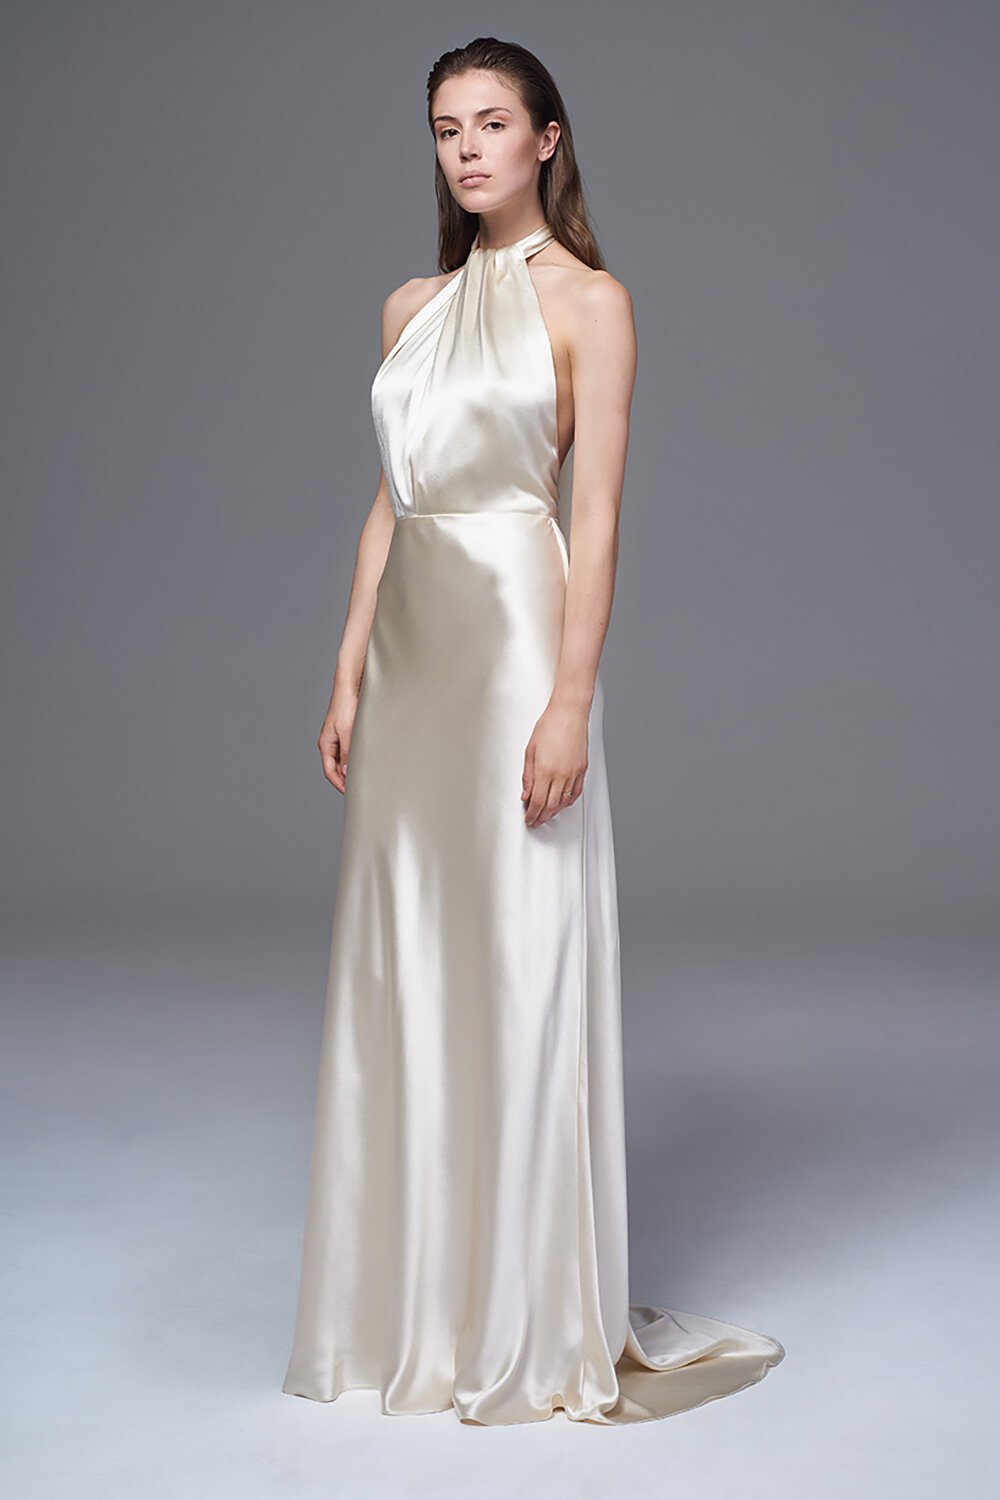 This stunning silk wedding dress boasts a stunning halter neckline